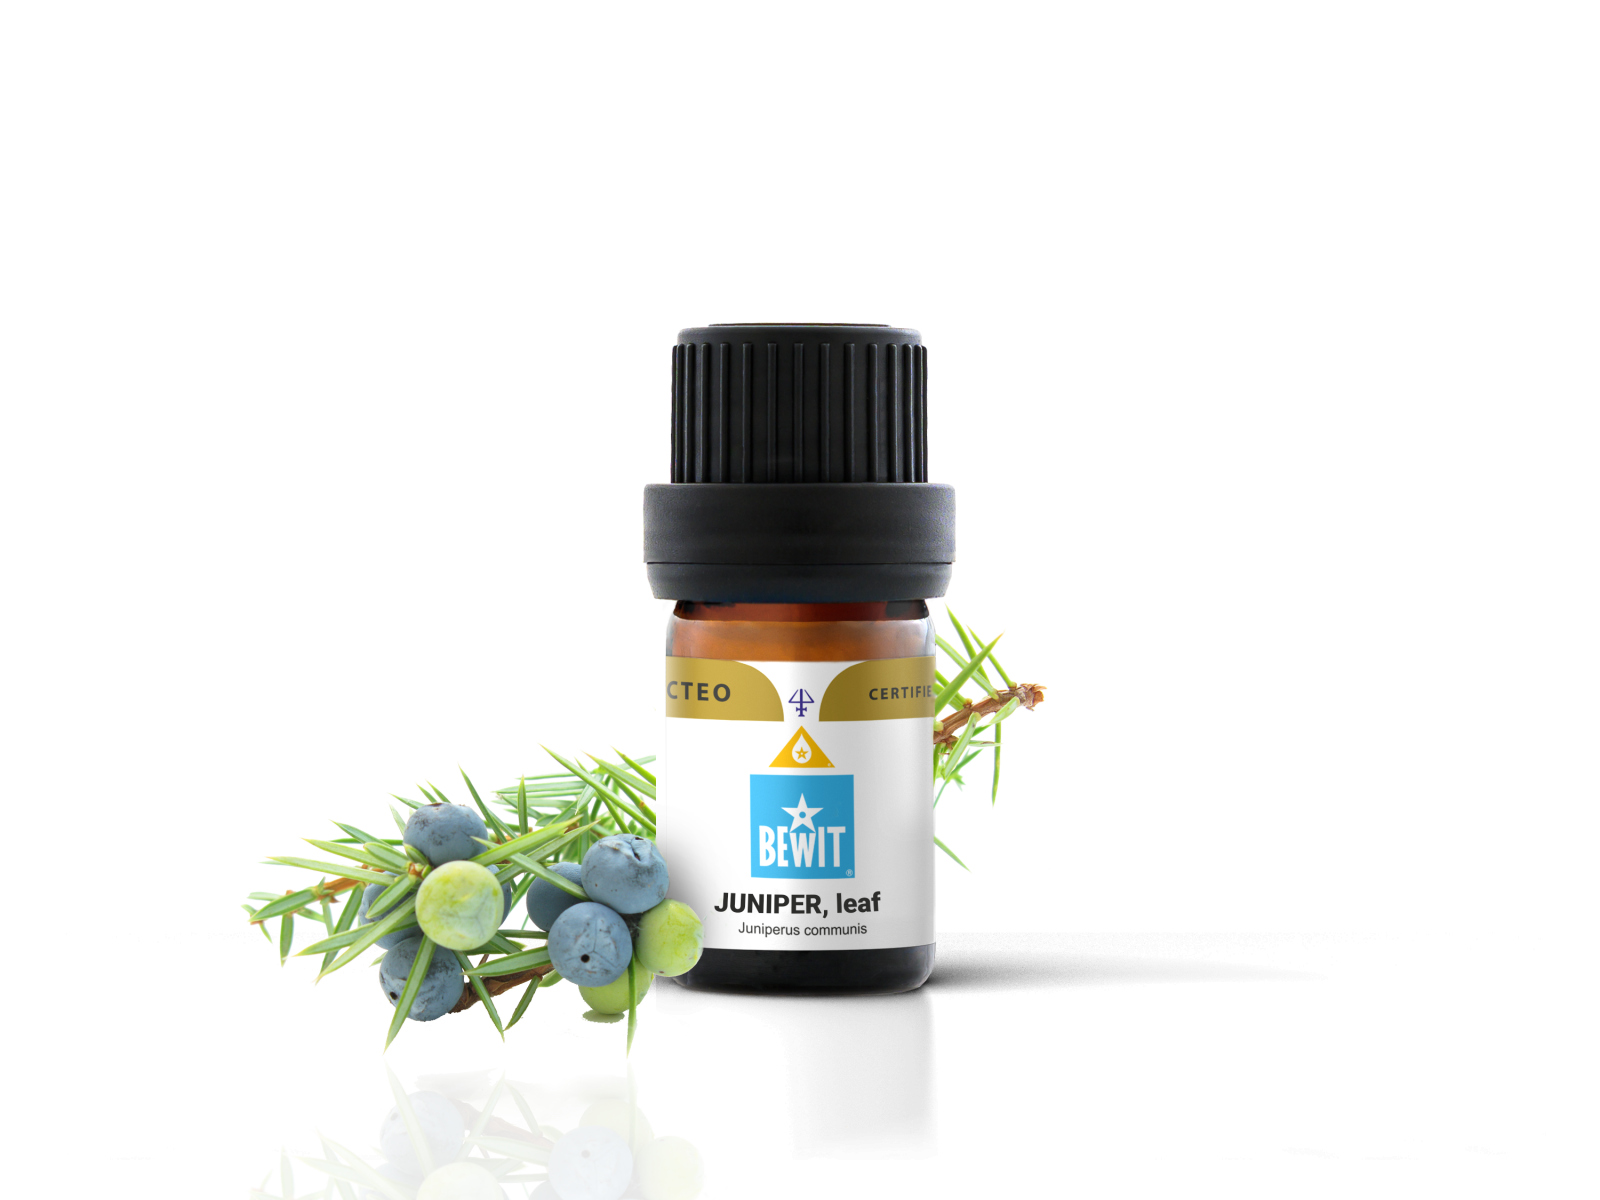 BEWIT Juniper, leaf - 100% pure essential oil - 2